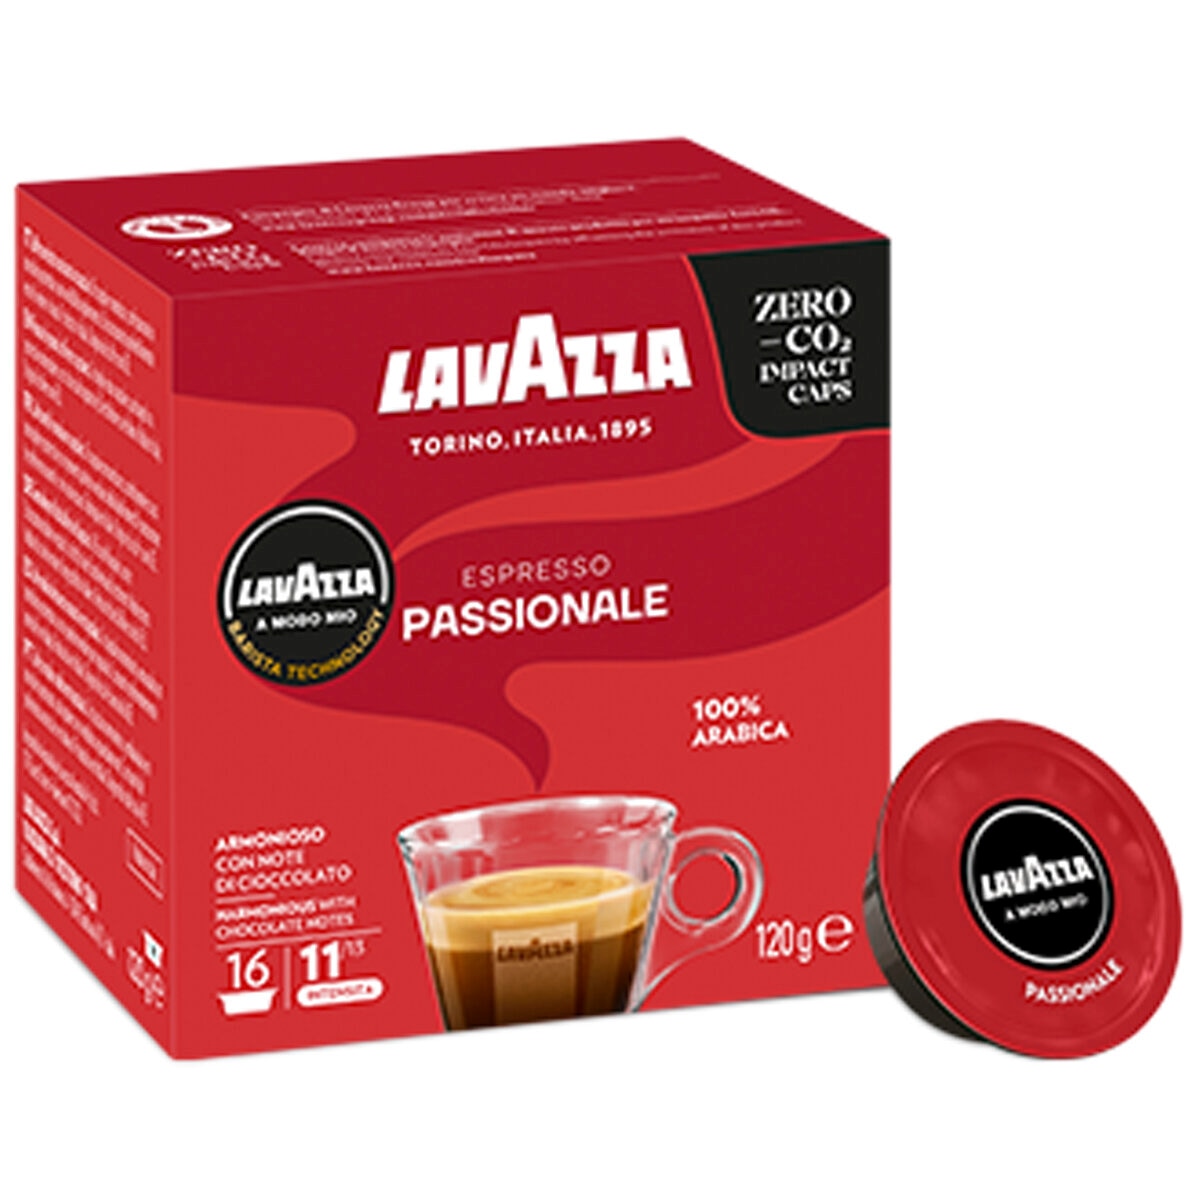 Lavazza A Modo Mio Passionale Coffee Capsules 96 Pack | C